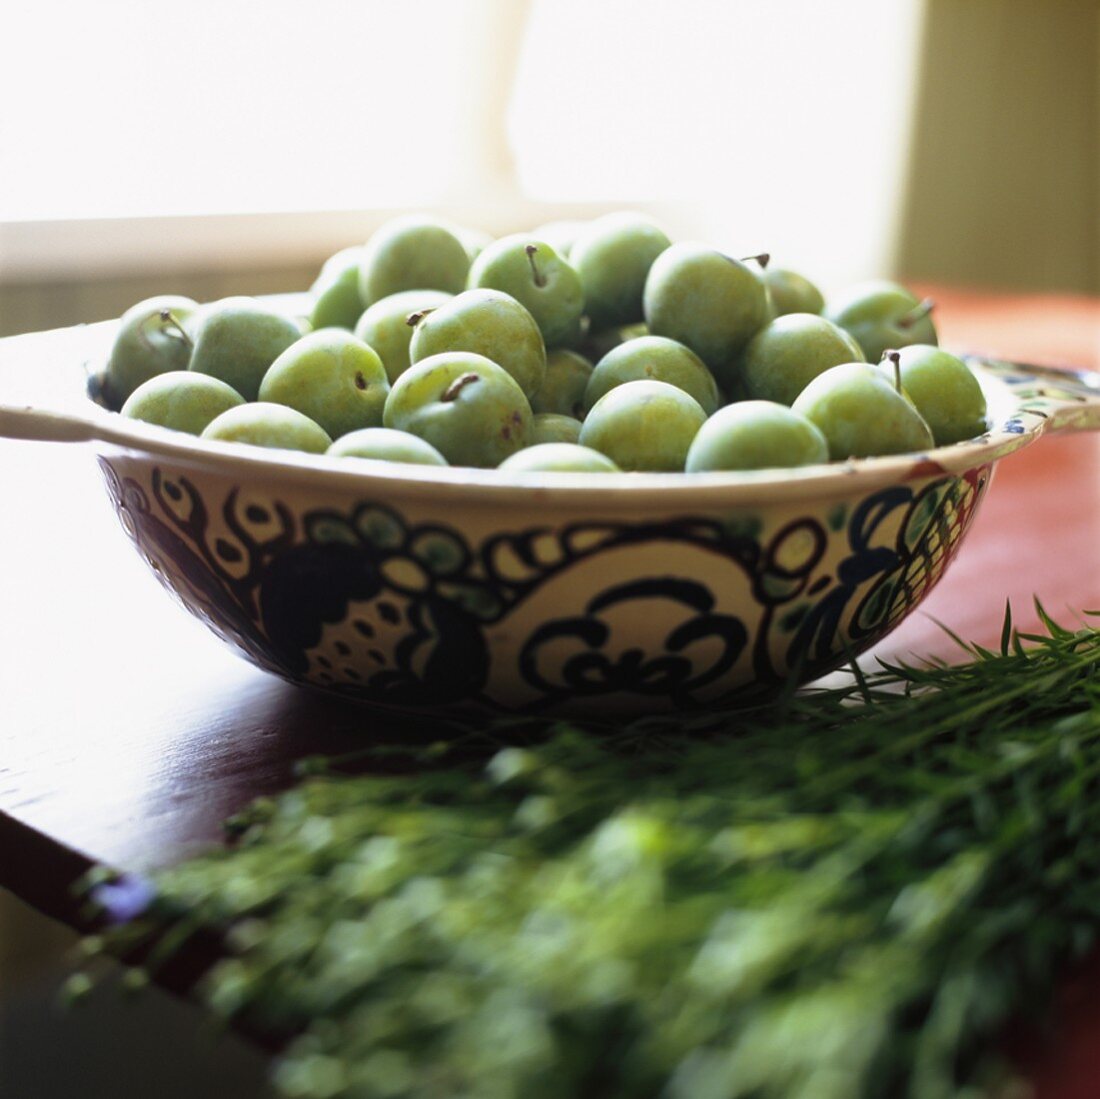 Green apples in ceramic bowl